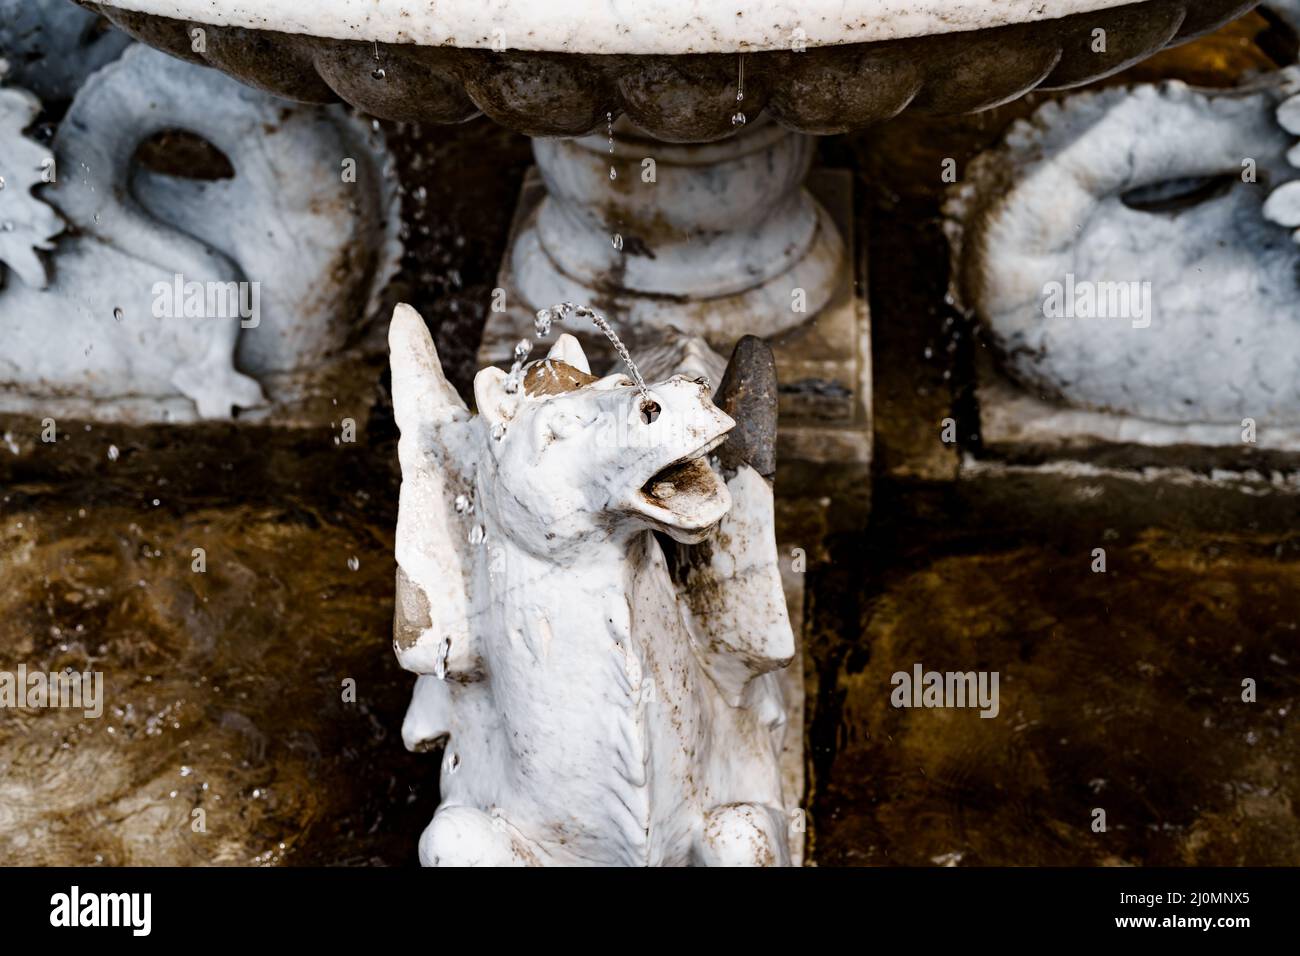 Statue d'un cheval voisin près d'un bol en pierre.Villa Monastero, Italie Banque D'Images